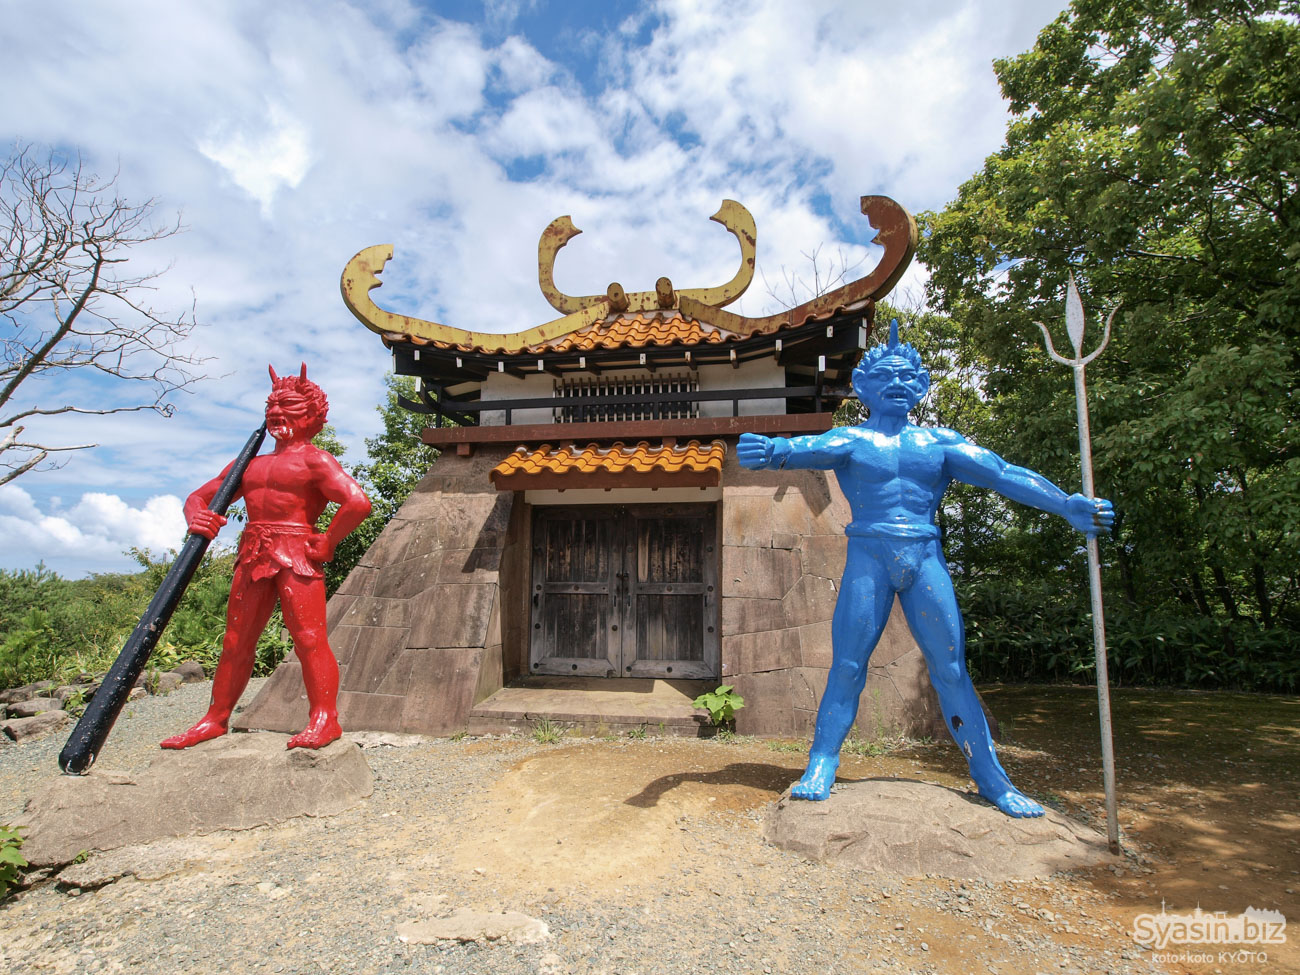 加賀市中央公園 – 昔話の像が立ち並ぶ・おとぎの国